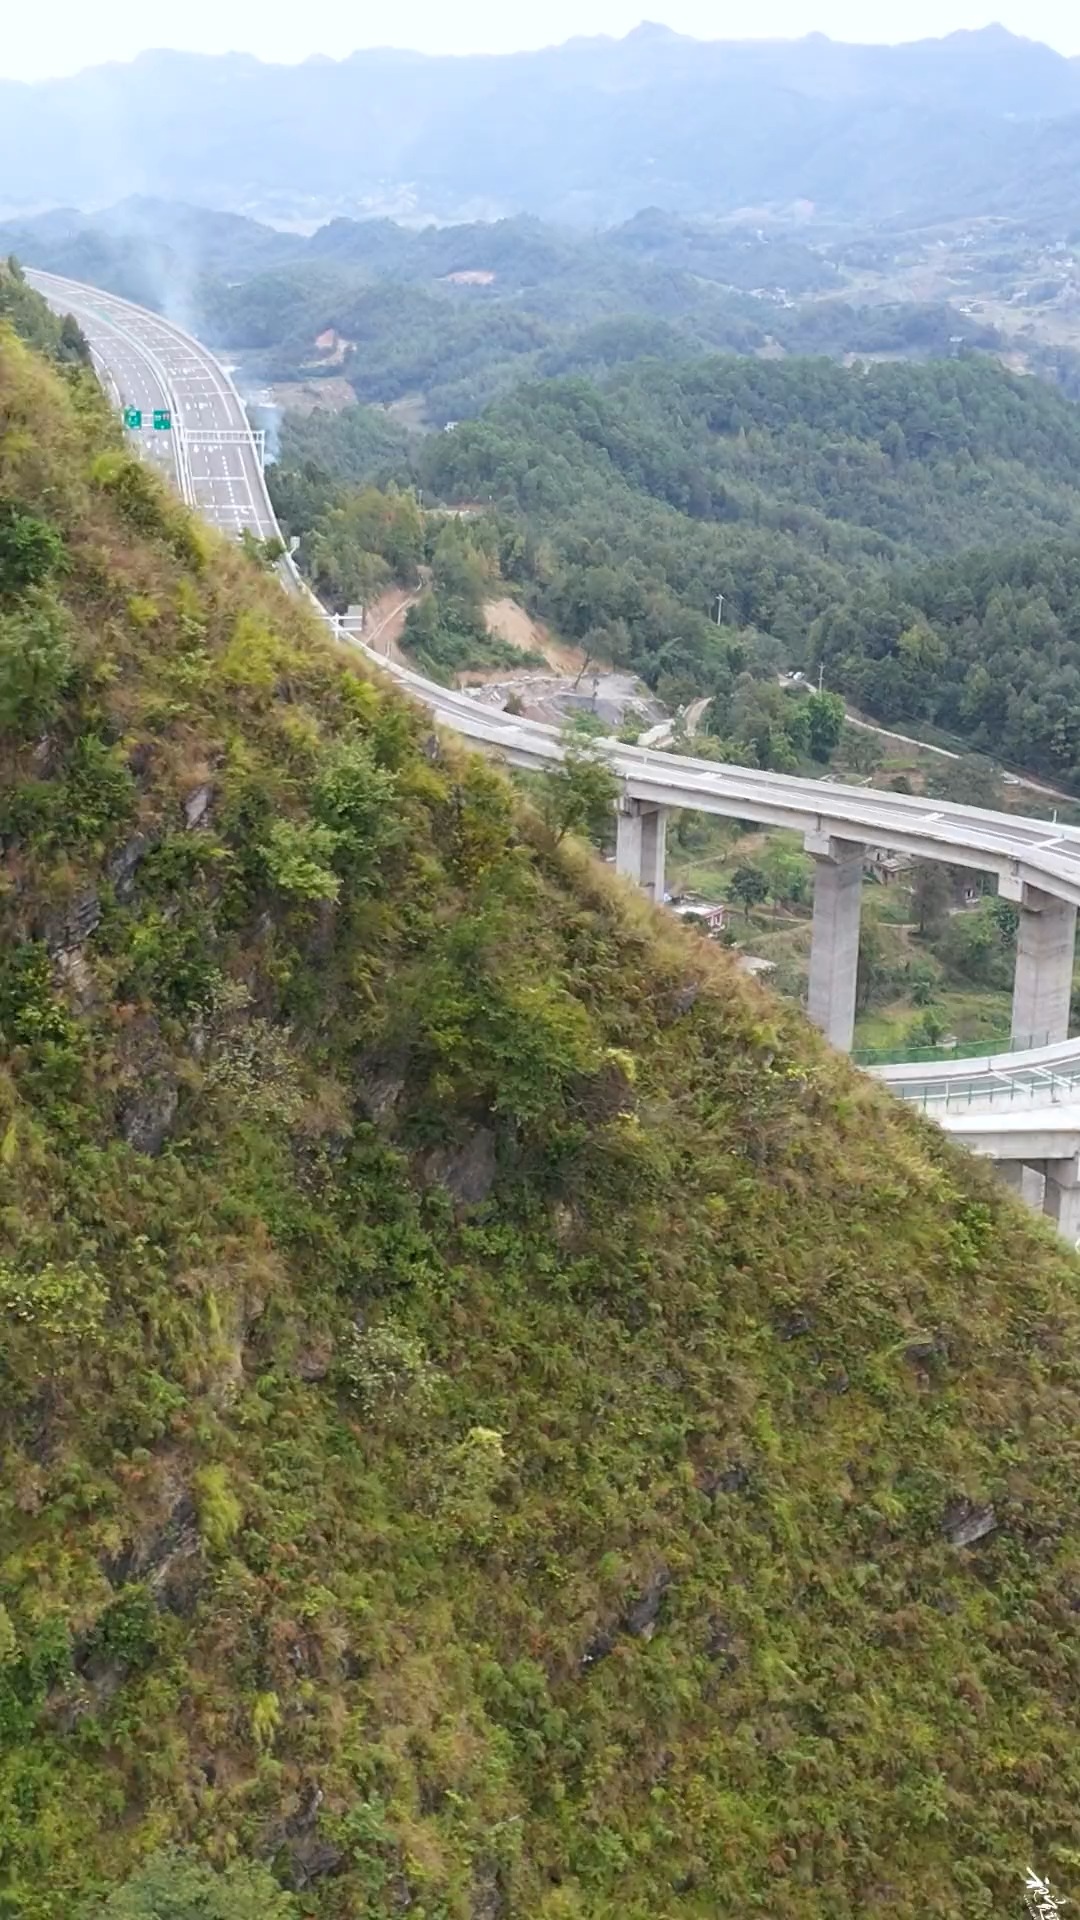 在贵州有一条可以掉头的高速公路，这样的高速你们喜欢吗？#高速 #高架桥 #交通出行 #贵州高速 #旅行大玩家.